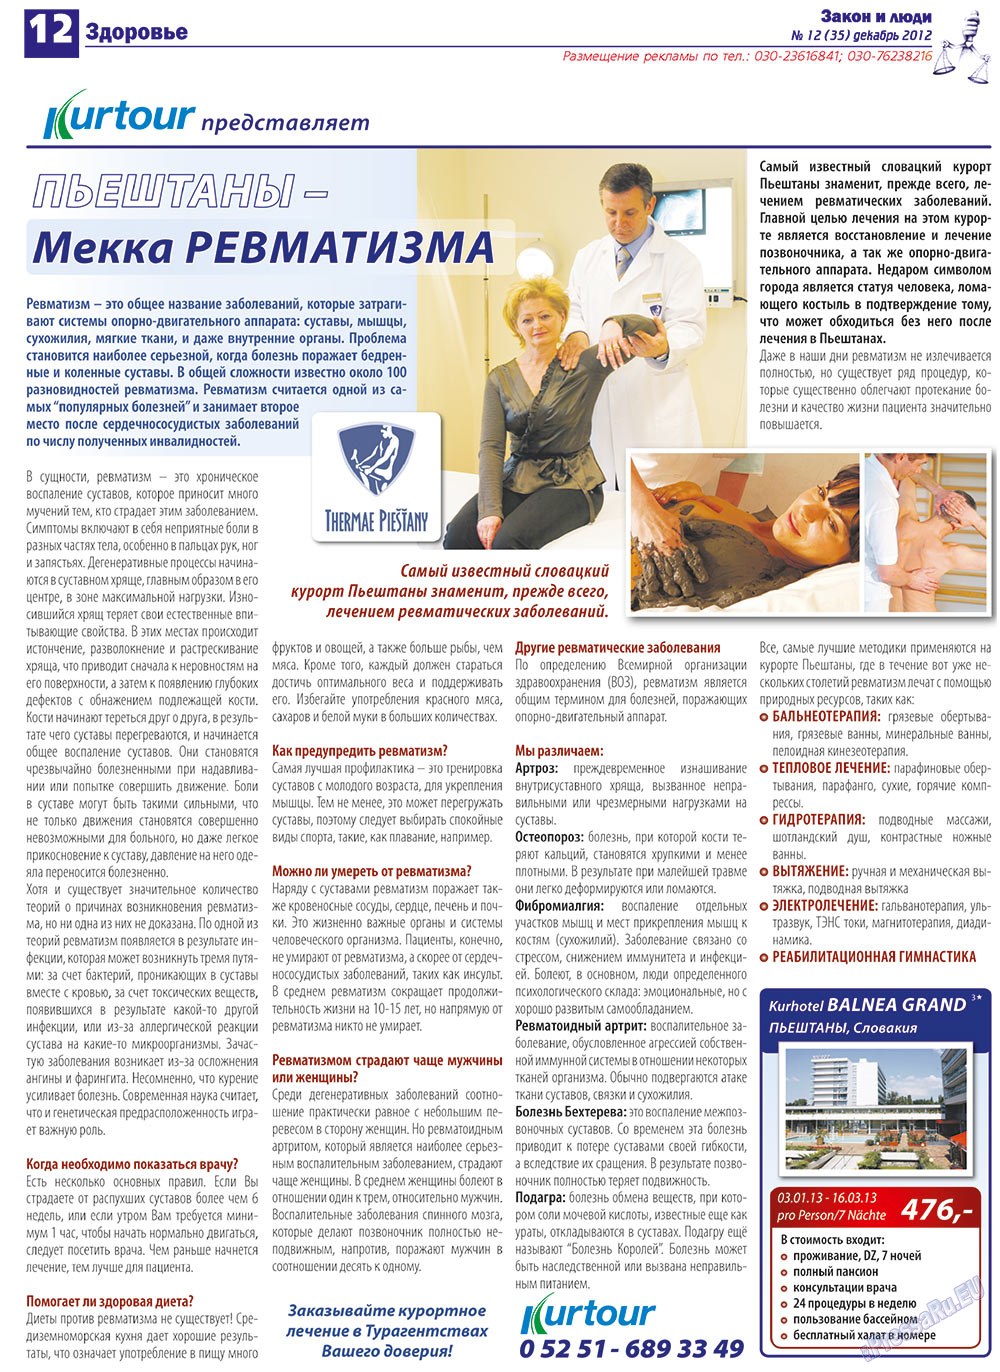 Закон и люди, газета. 2012 №12 стр.12